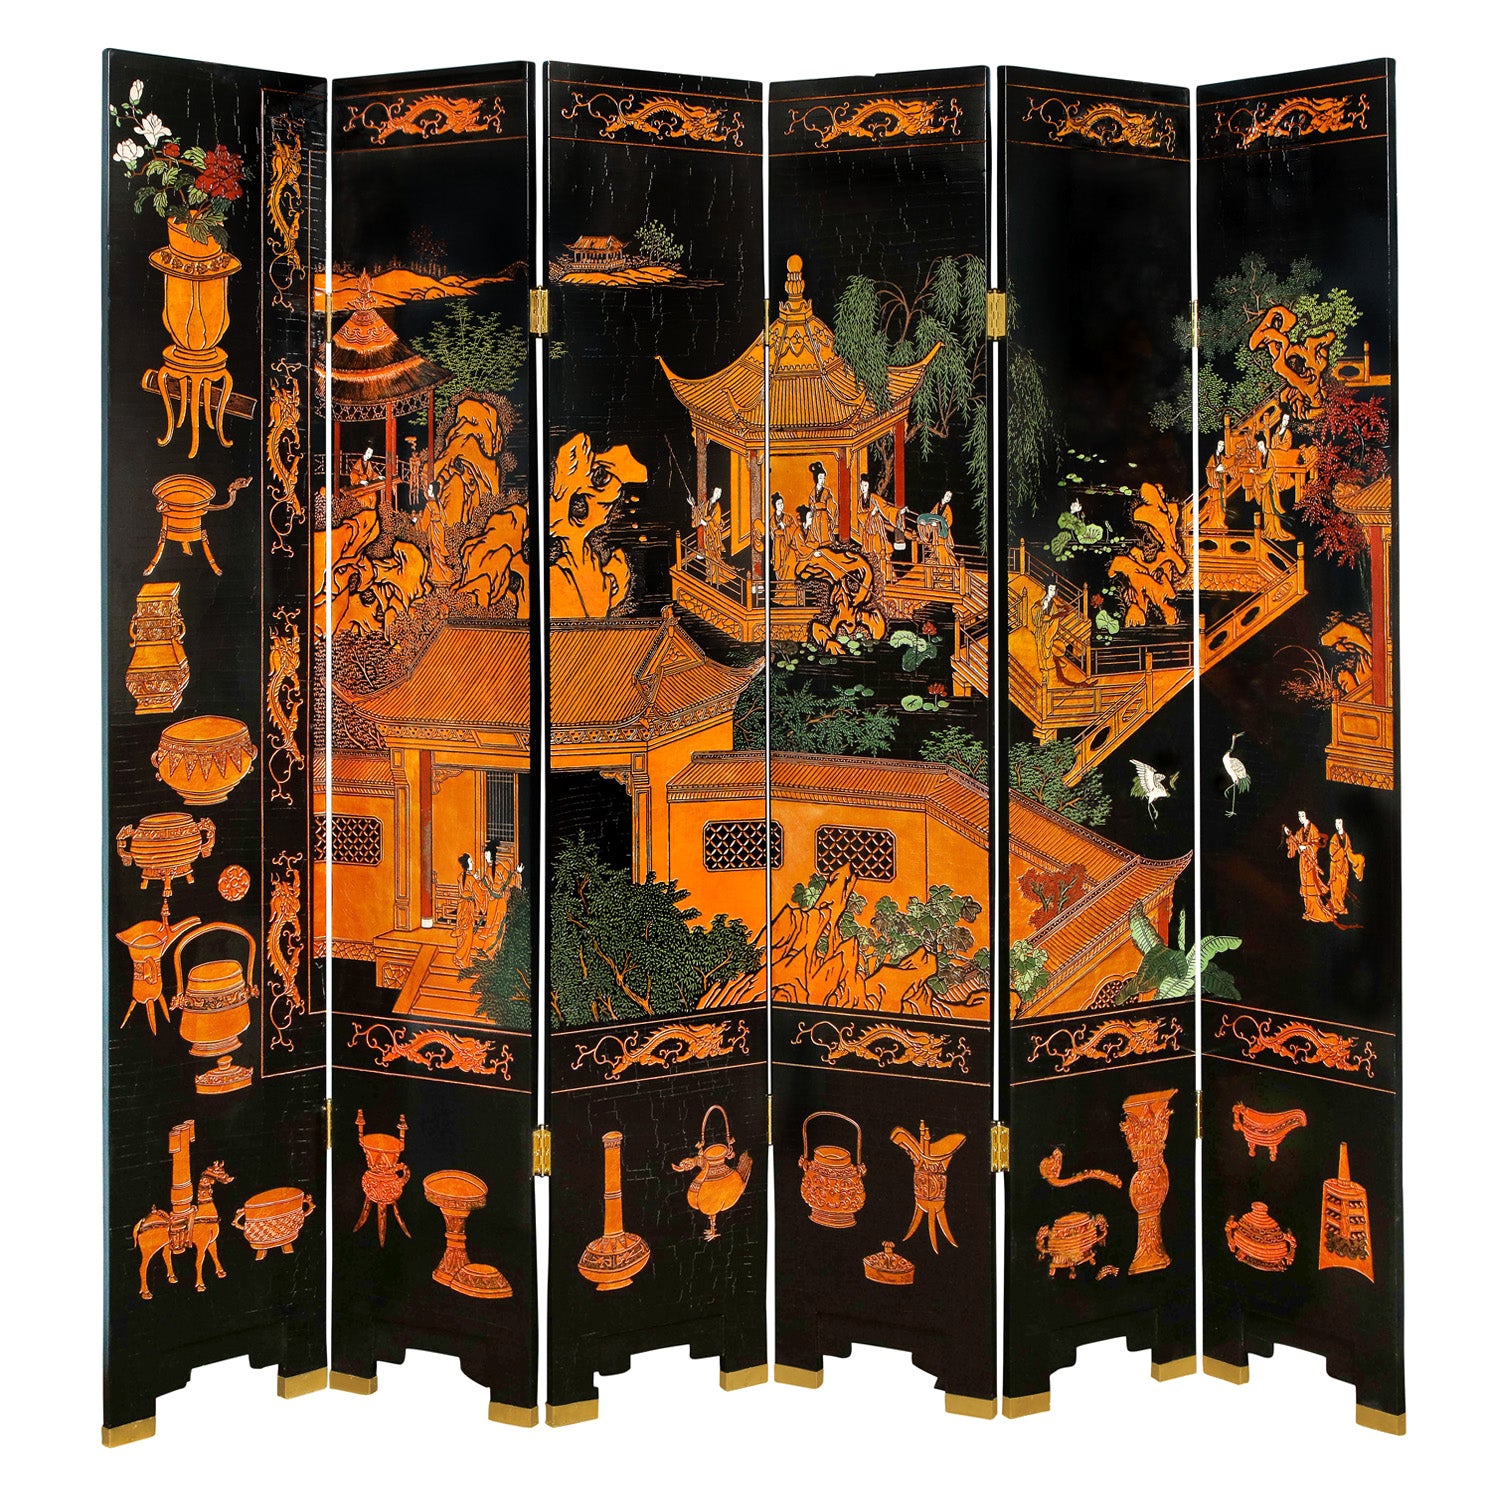 Large 6 Panel Artisan Chinese Screen Sold Through Karl Springer, 1980s